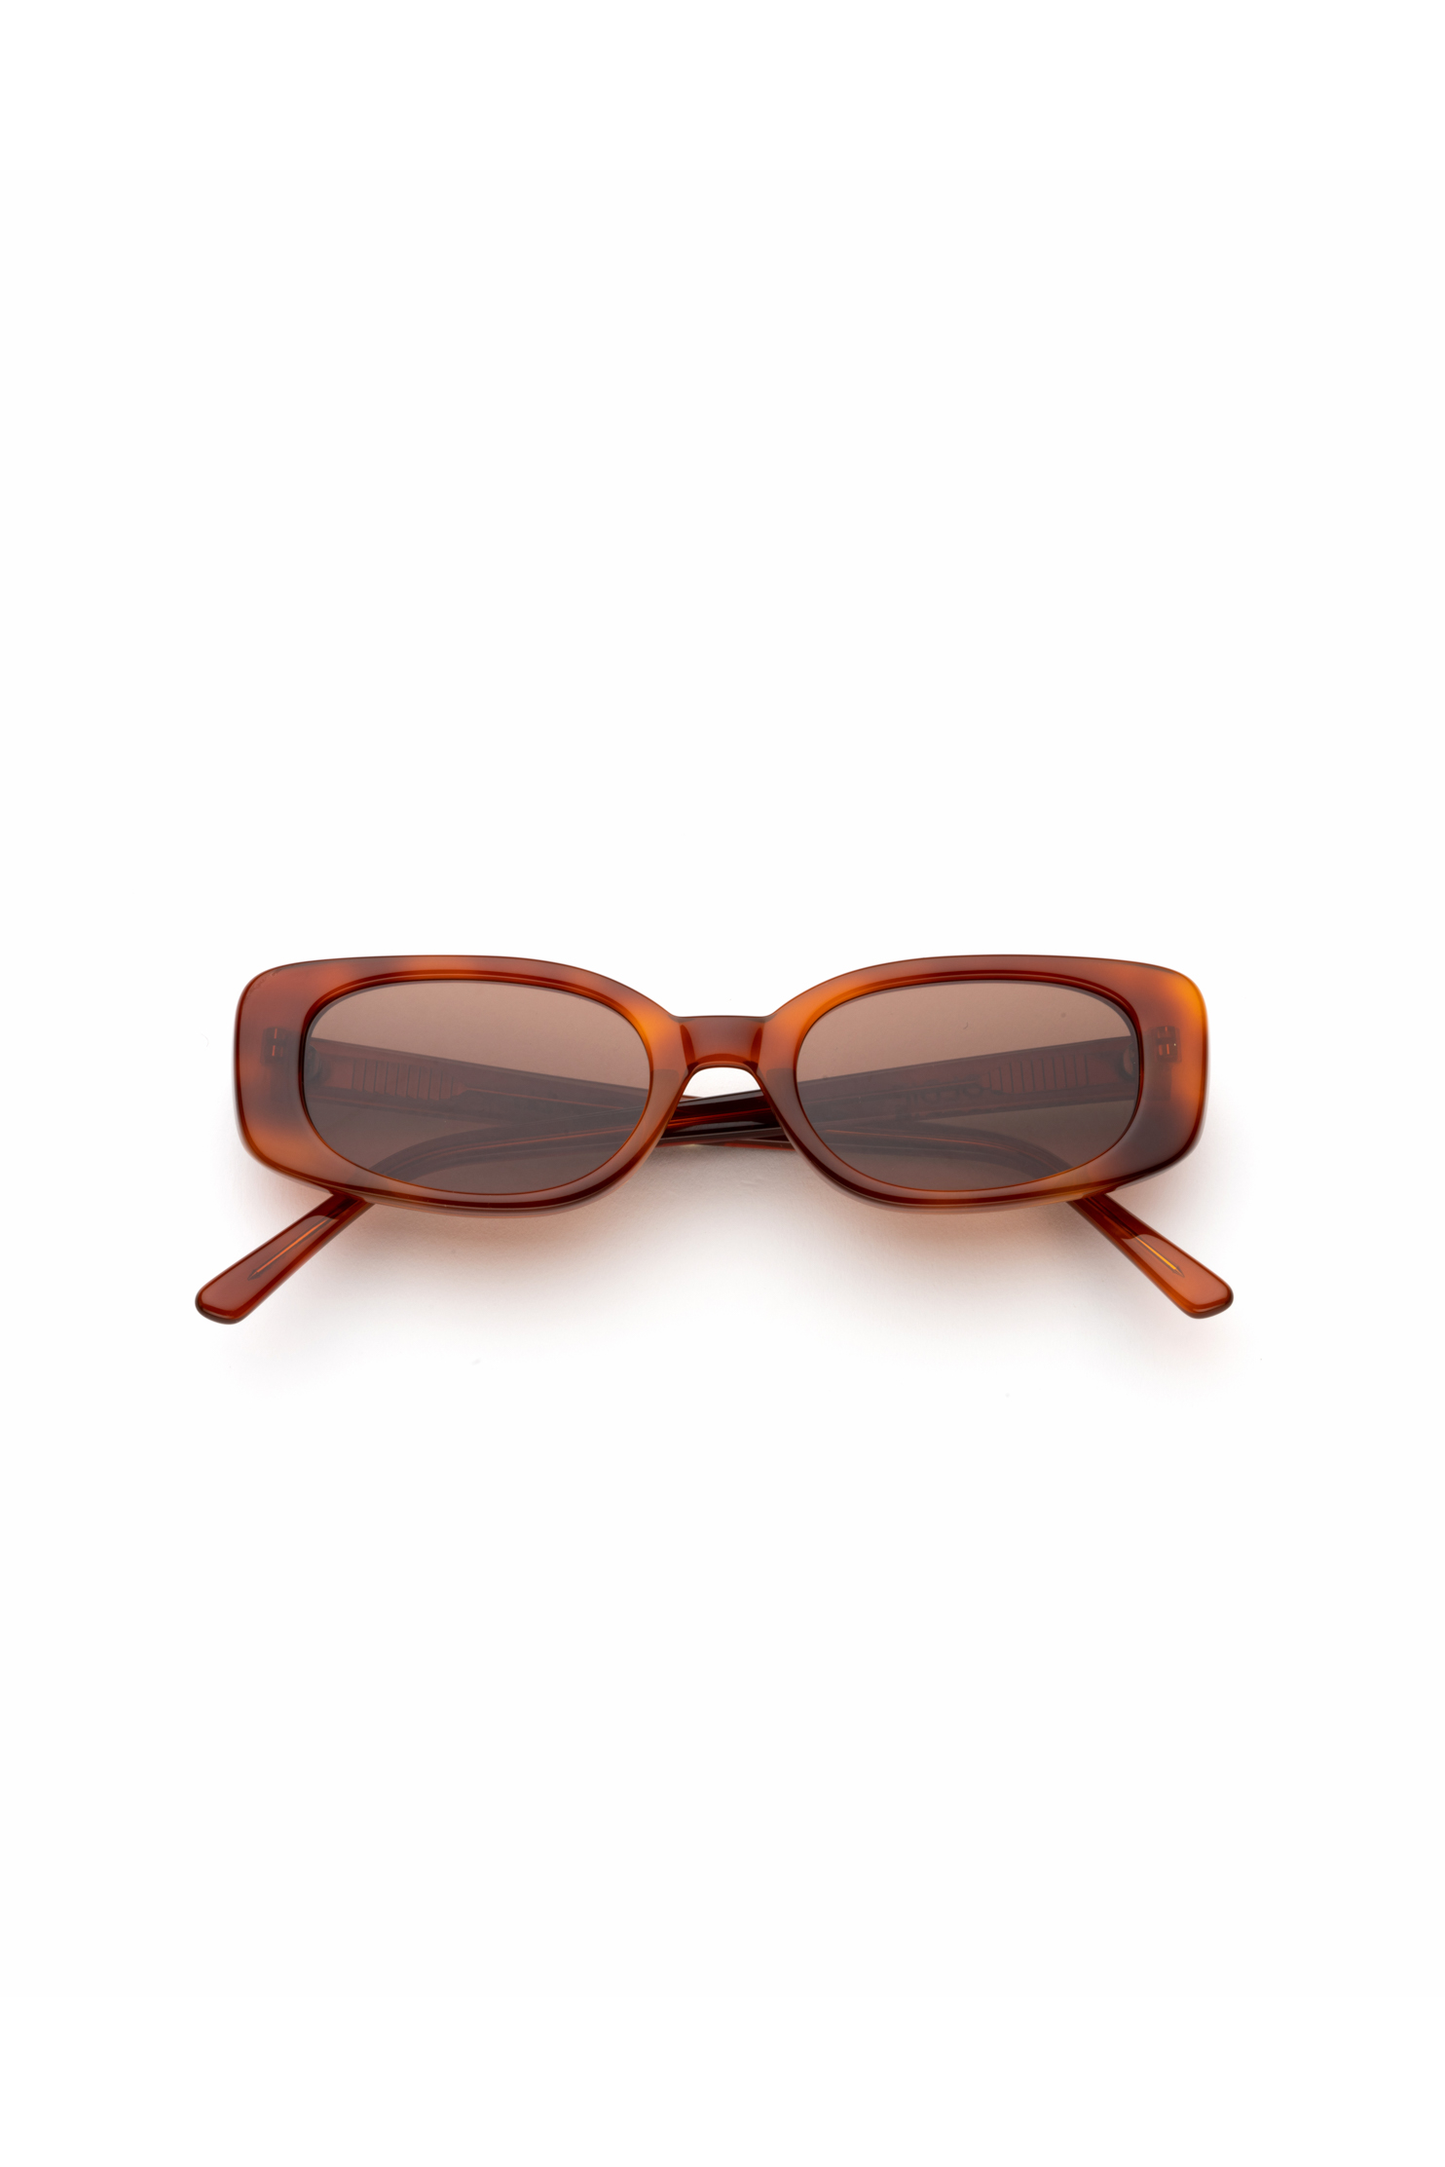 Solene - Chestnut Sunglasses